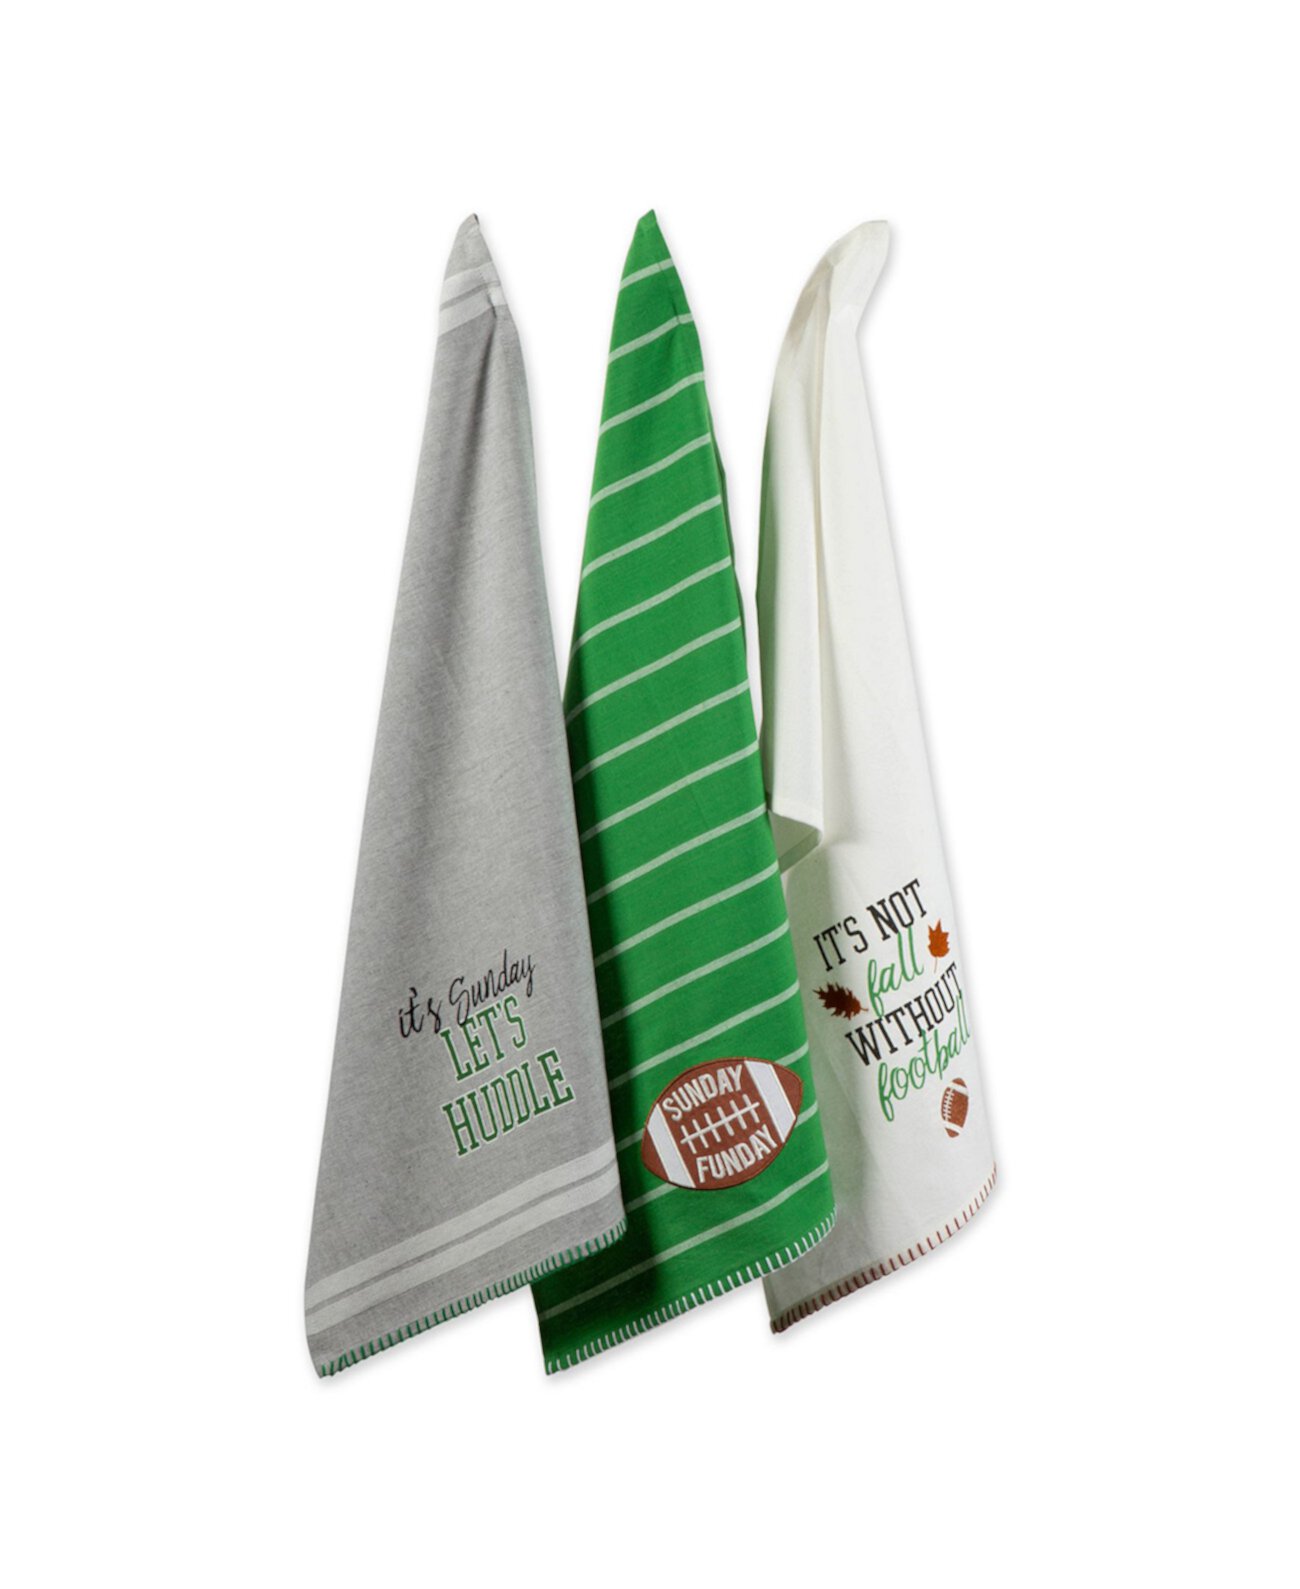 Дизайнерские импортные воскресные футбольные полотенца, набор из 3 шт. Design Imports